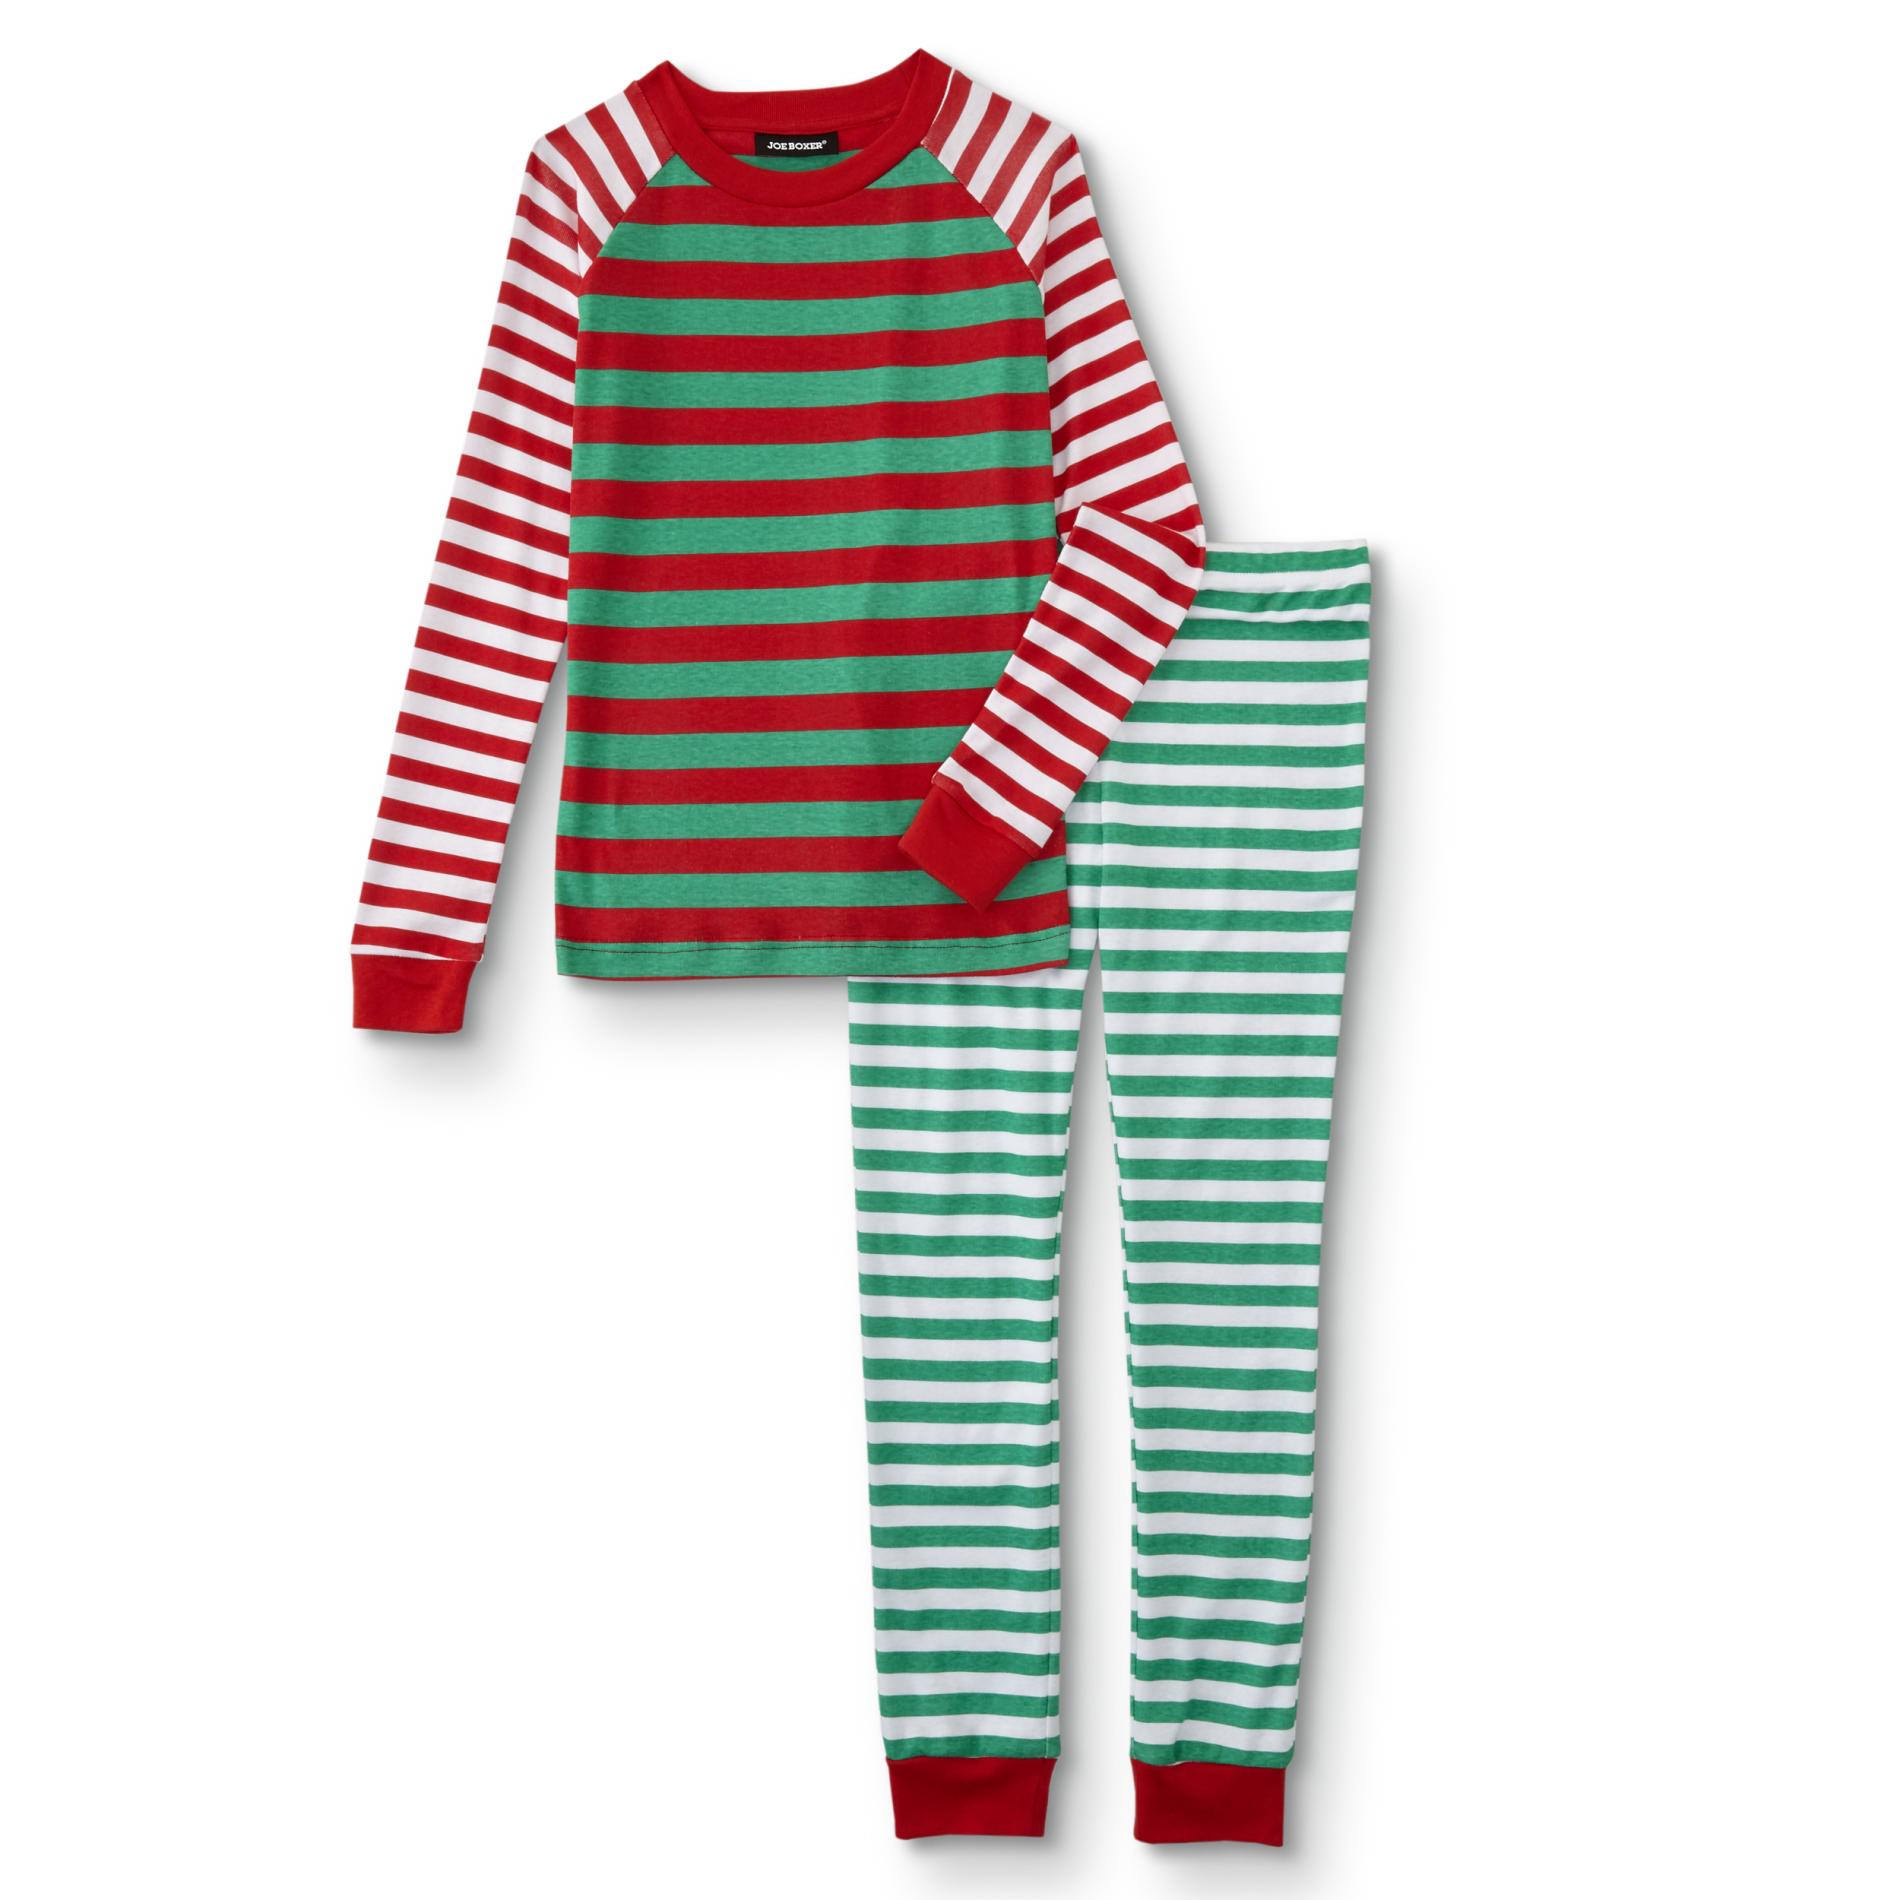 Joe Boxer Kids' Christmas Pajama Shirt & Jogger Pants - Elf